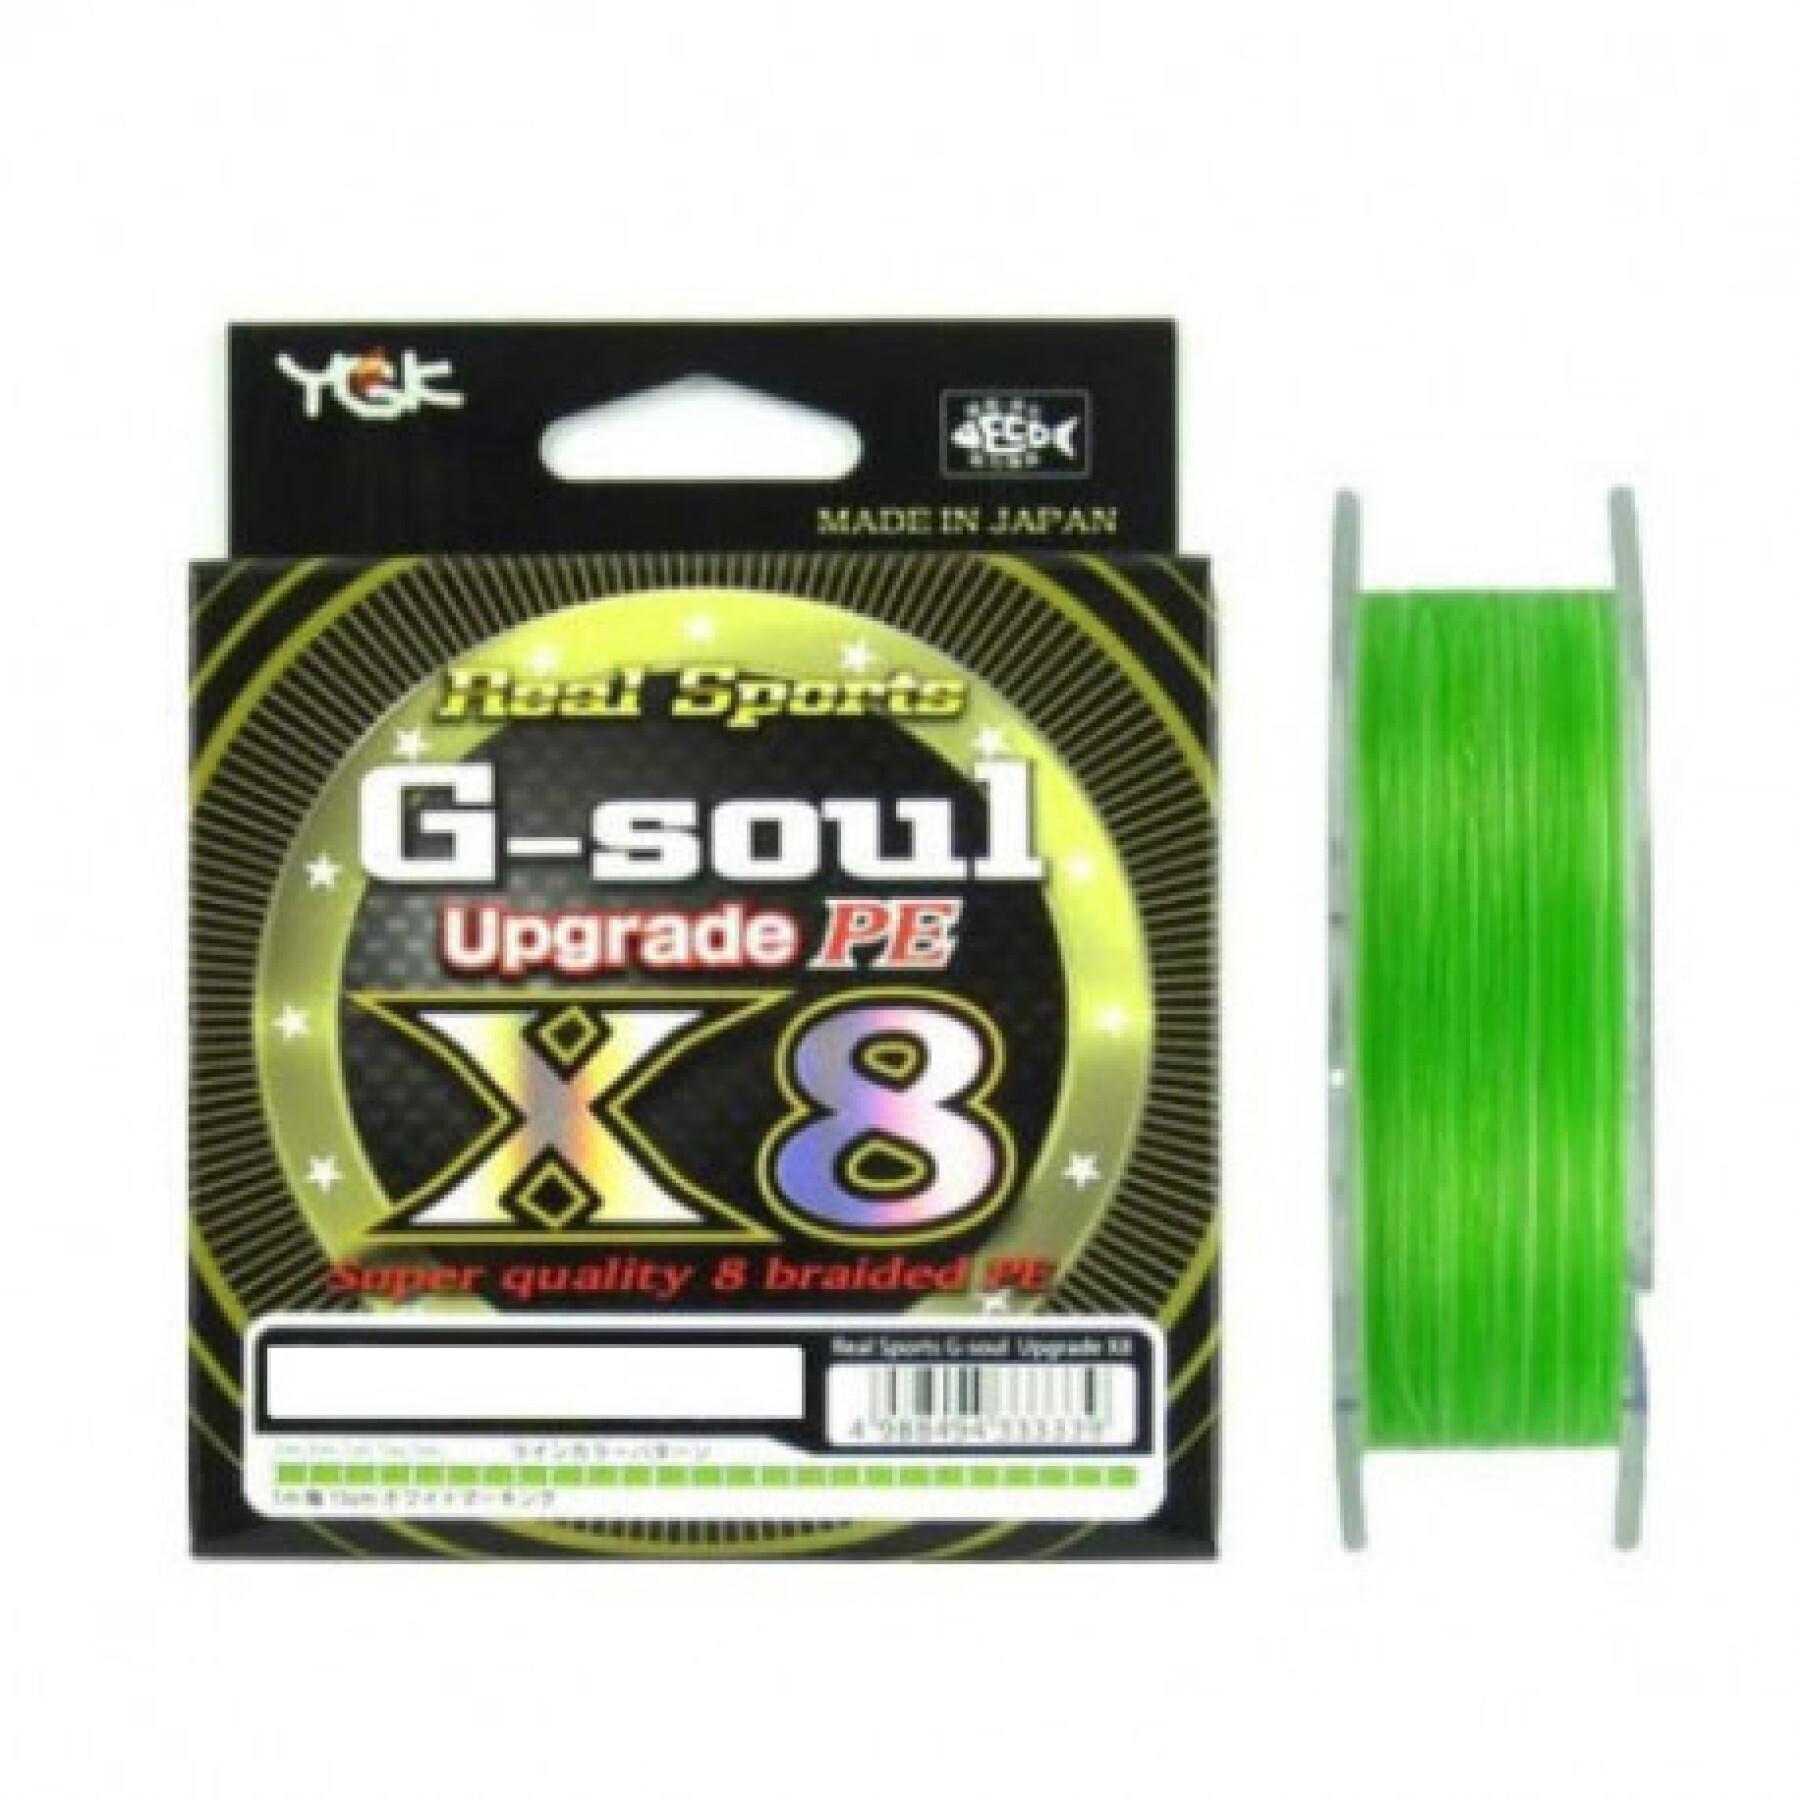 Braid YGK Wx8 Real Sports G Soul - Pe 1 (16Lb)